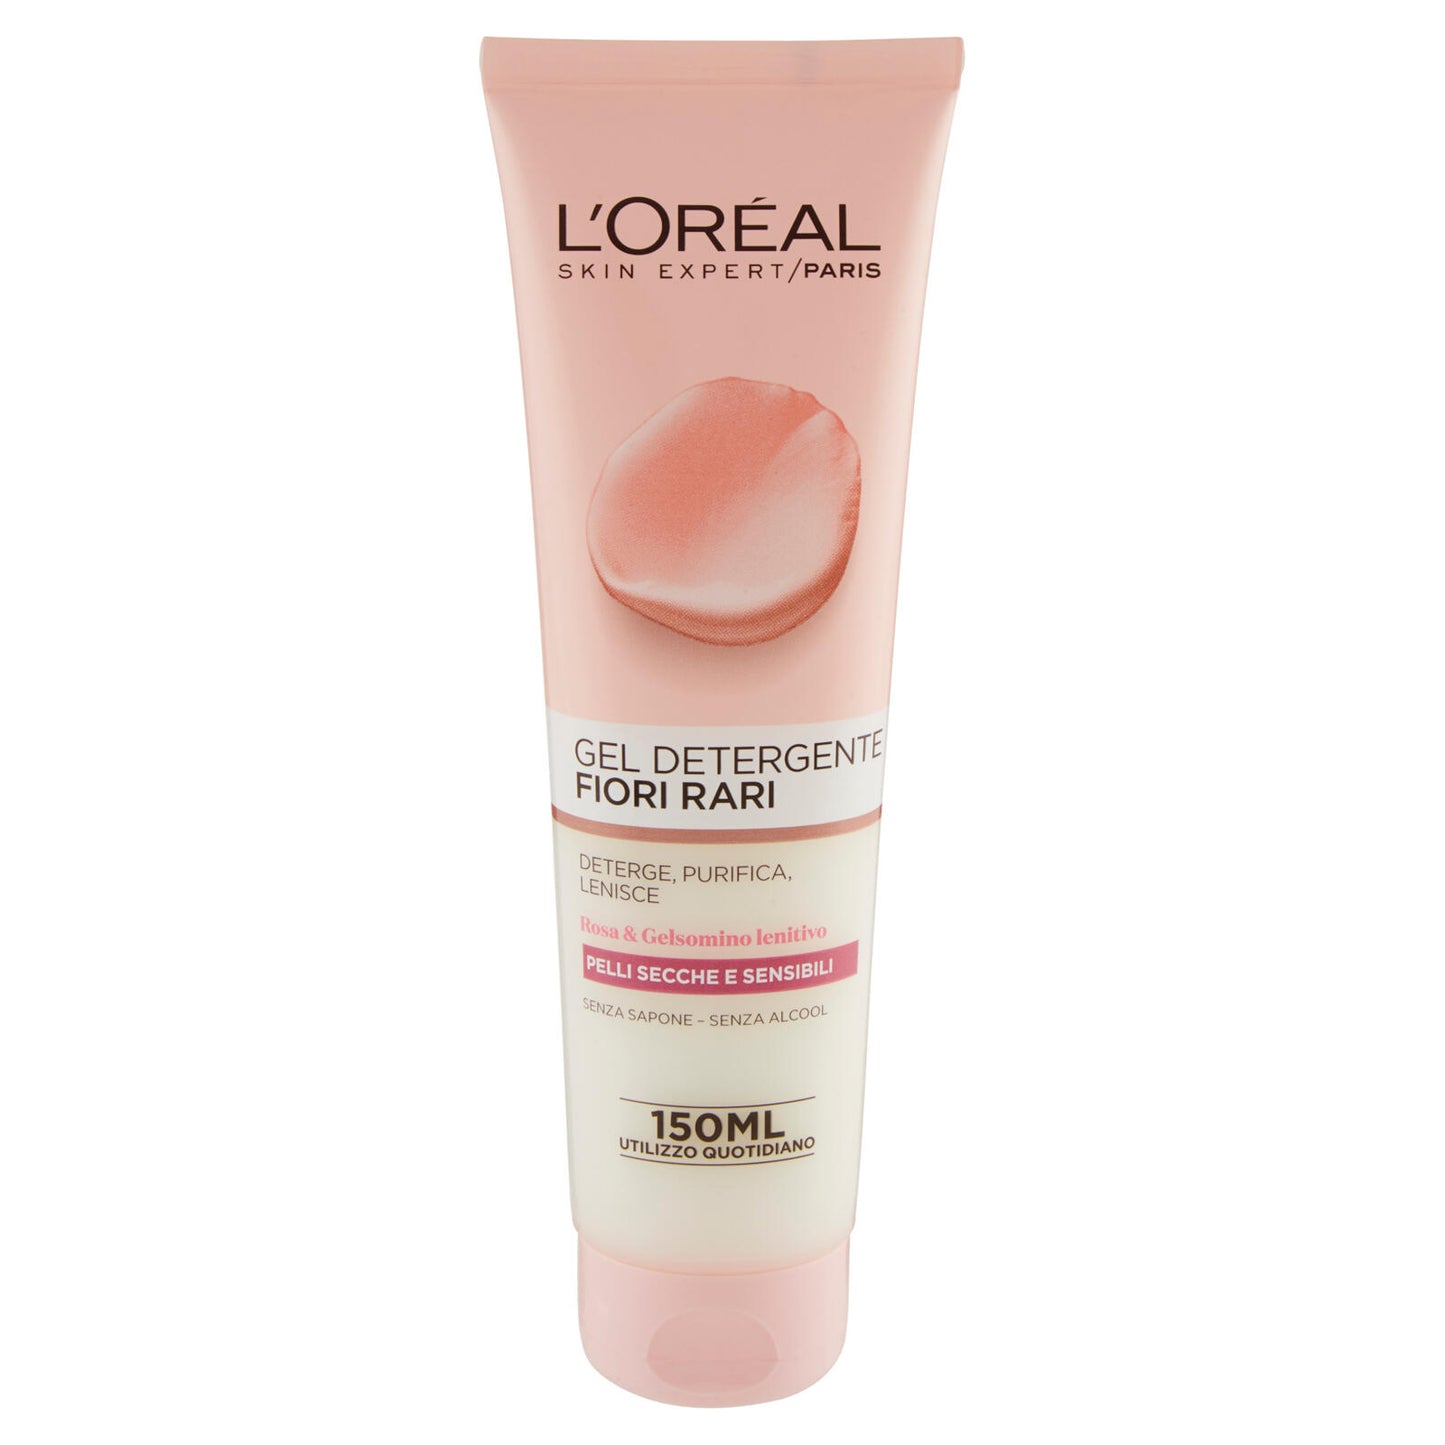 L'Oréal Paris Fiori Rari - Gel Detergente Pelli Secche e Sensibili -150 ml